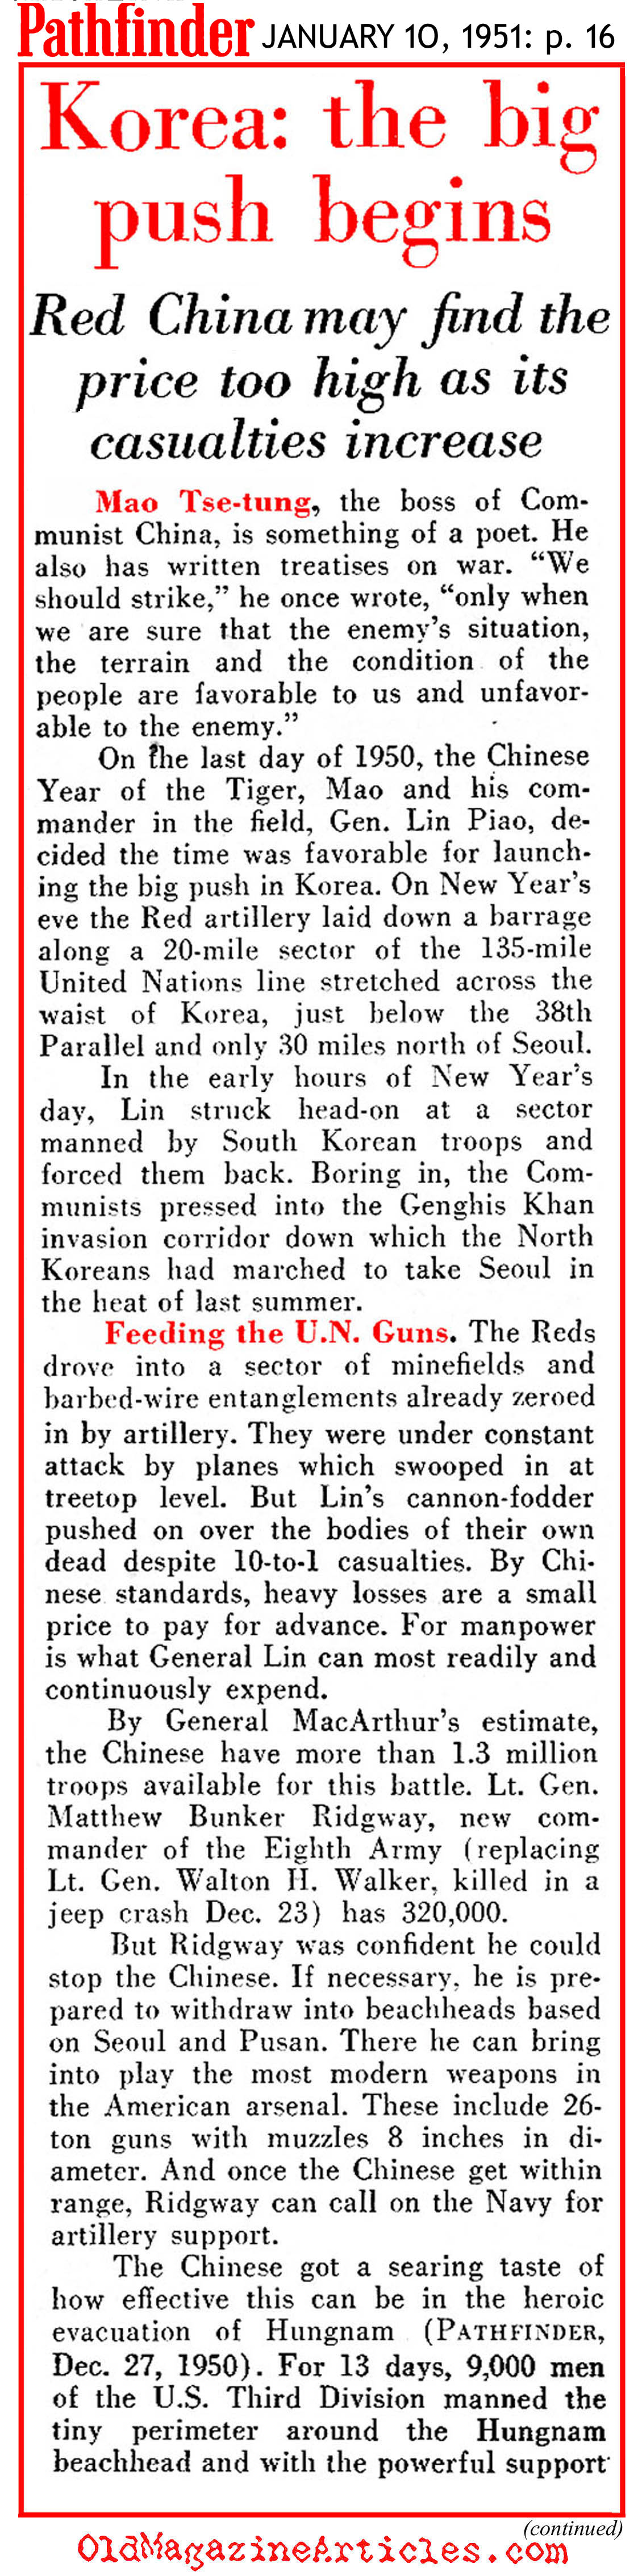 The North Korean Winter Offensive (Pathfinder Magazine, 1951)